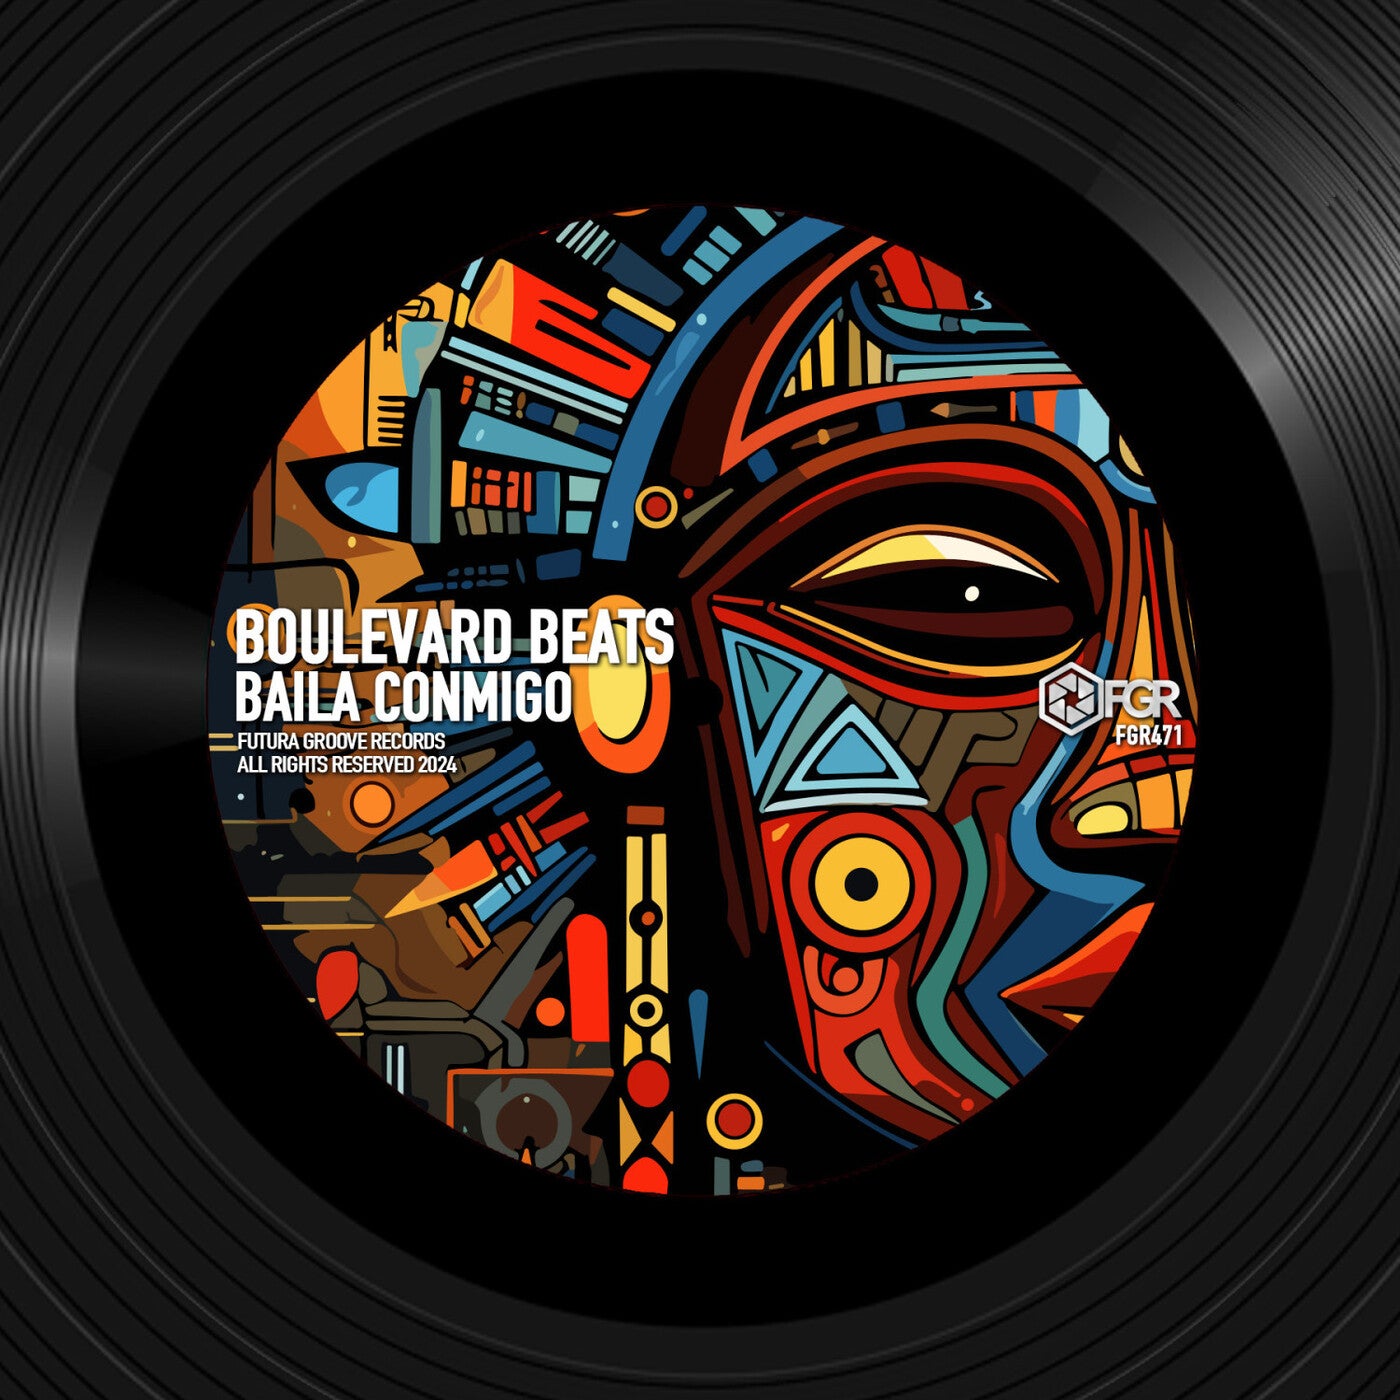 Boulevard Beats - Baila Conmigo on Futura Groove Records